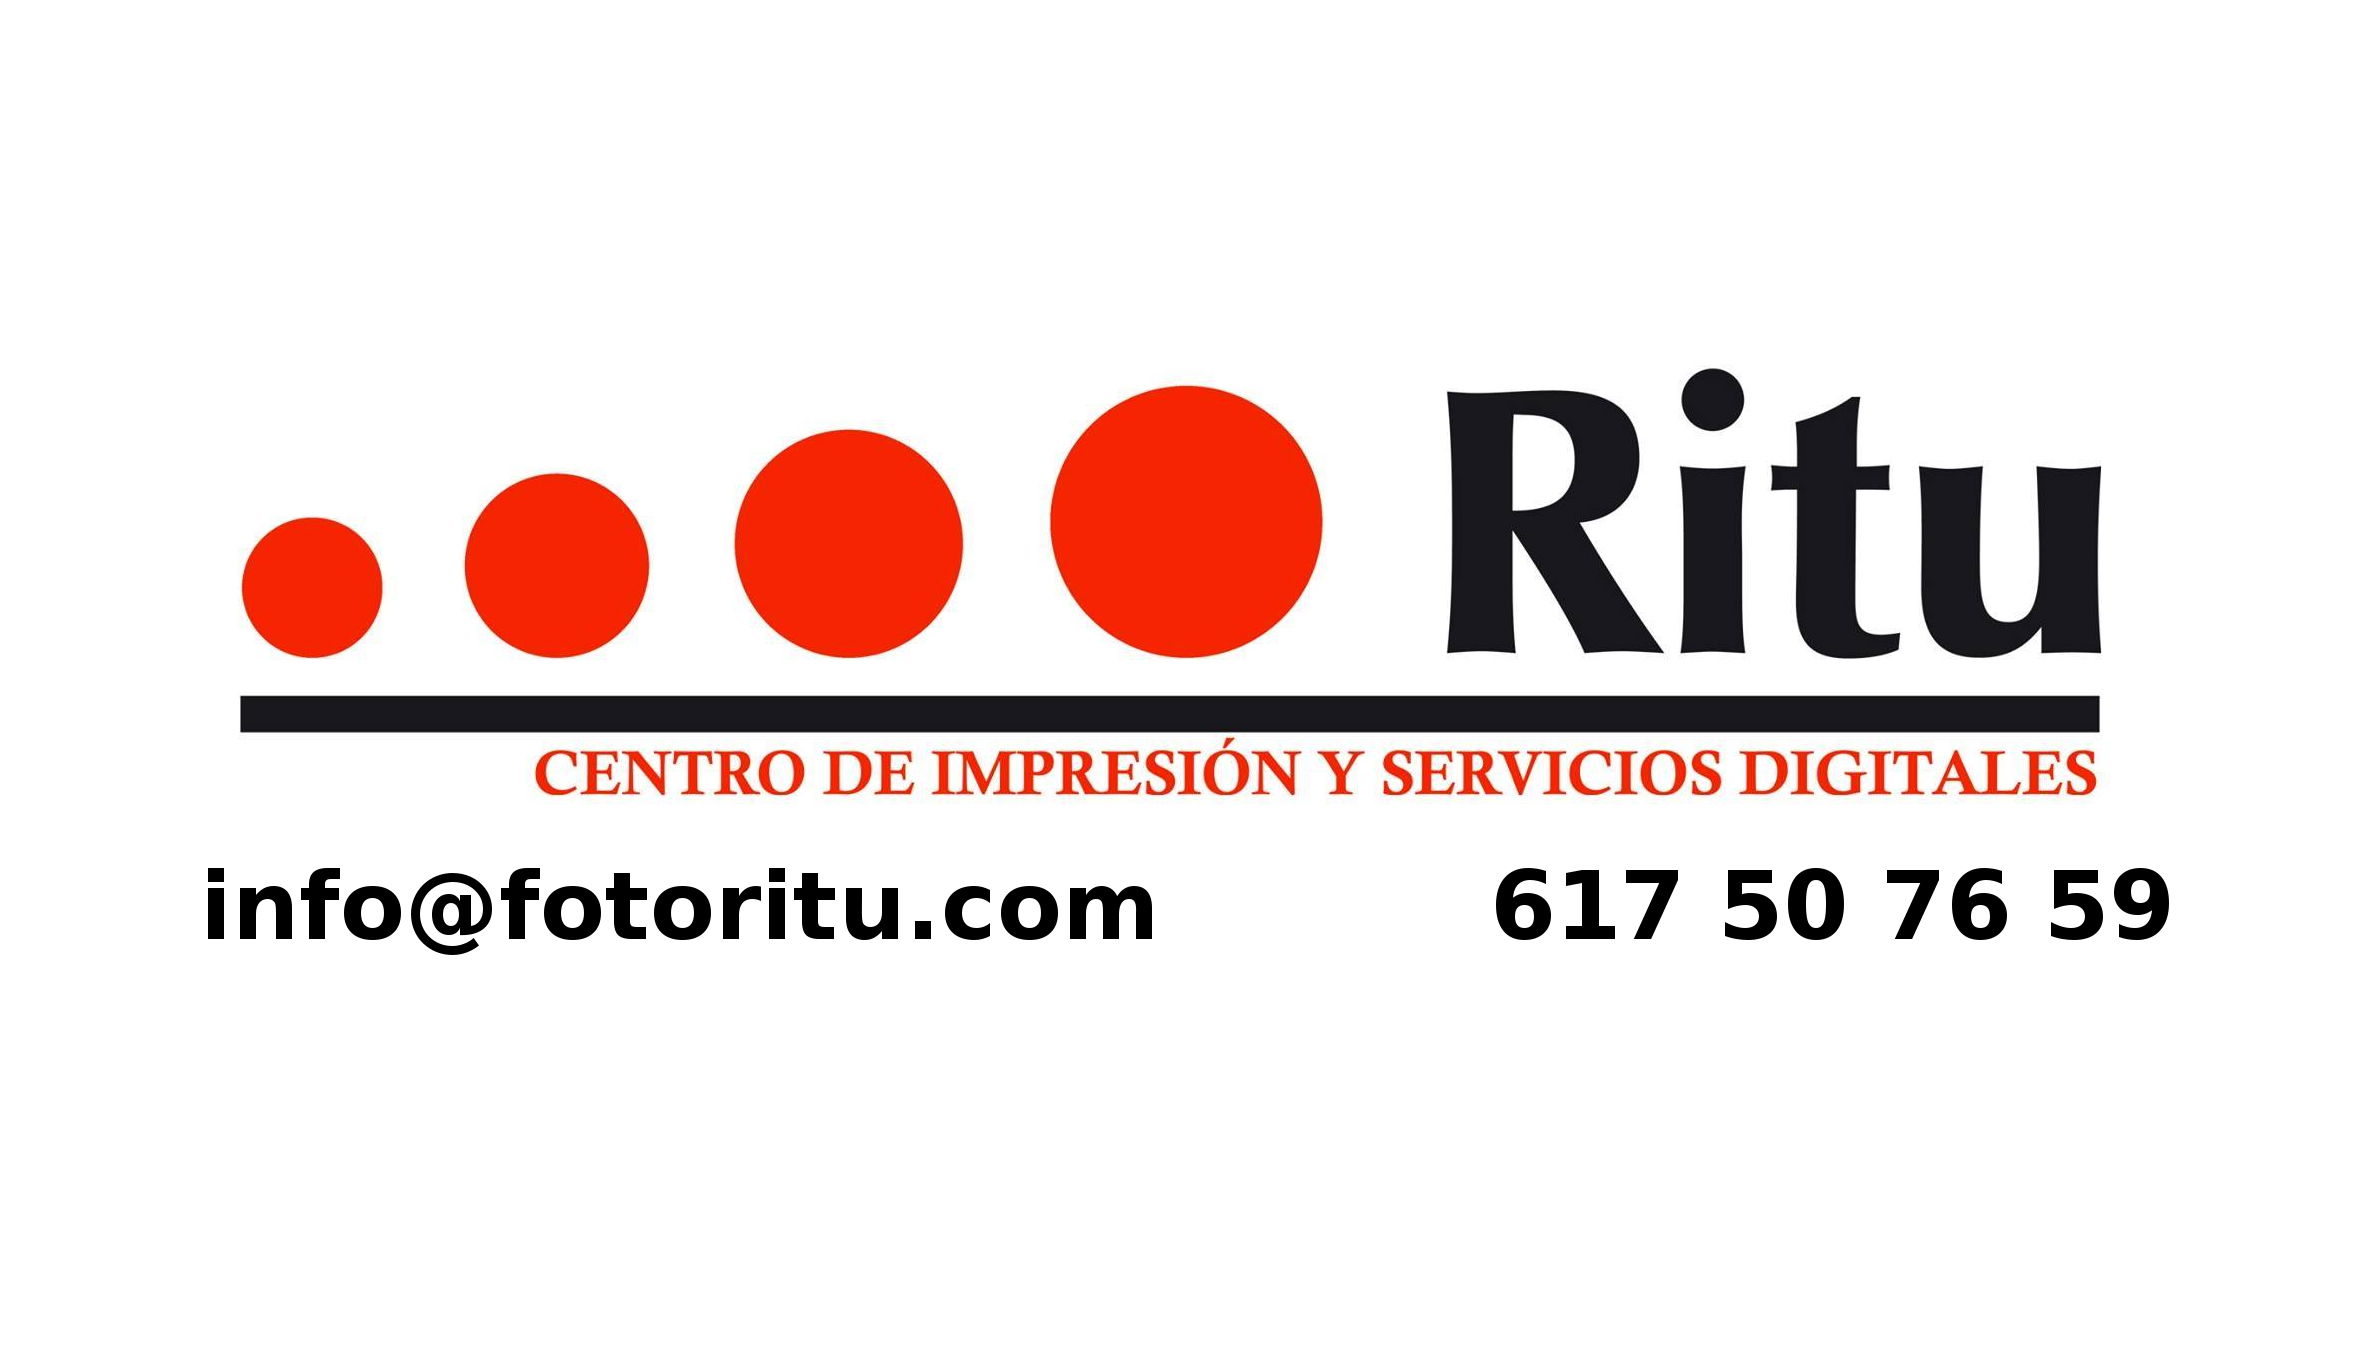 Foto Ritu - Centro de impresión y servicios digitales